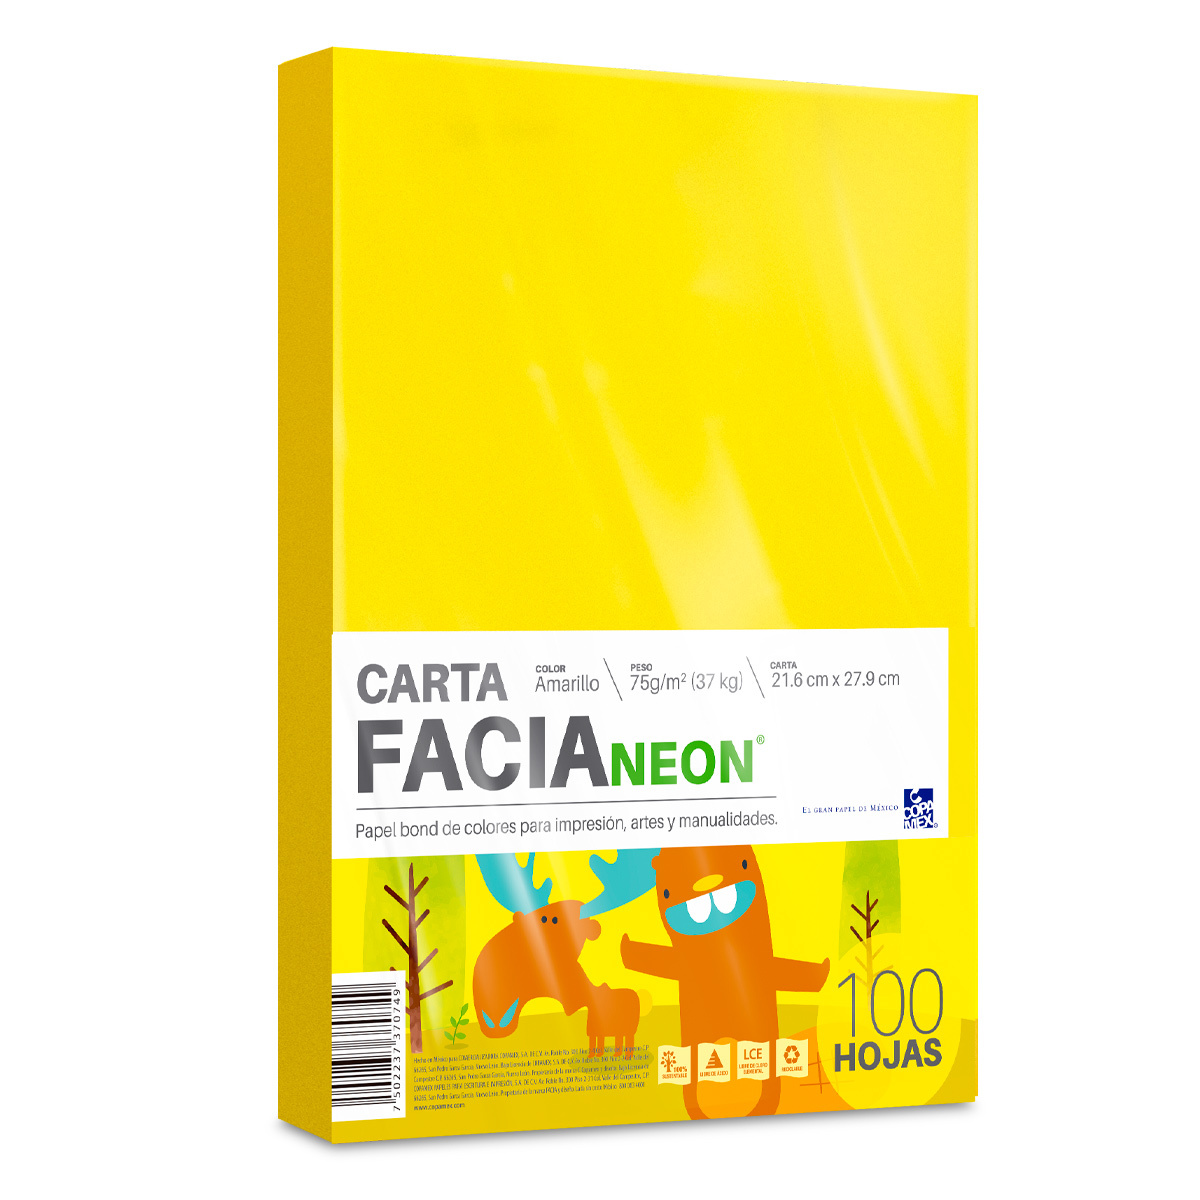 Hojas de Color Facia Neon / Paquete 100 hojas / Carta / Amarillo neón / 75 gr